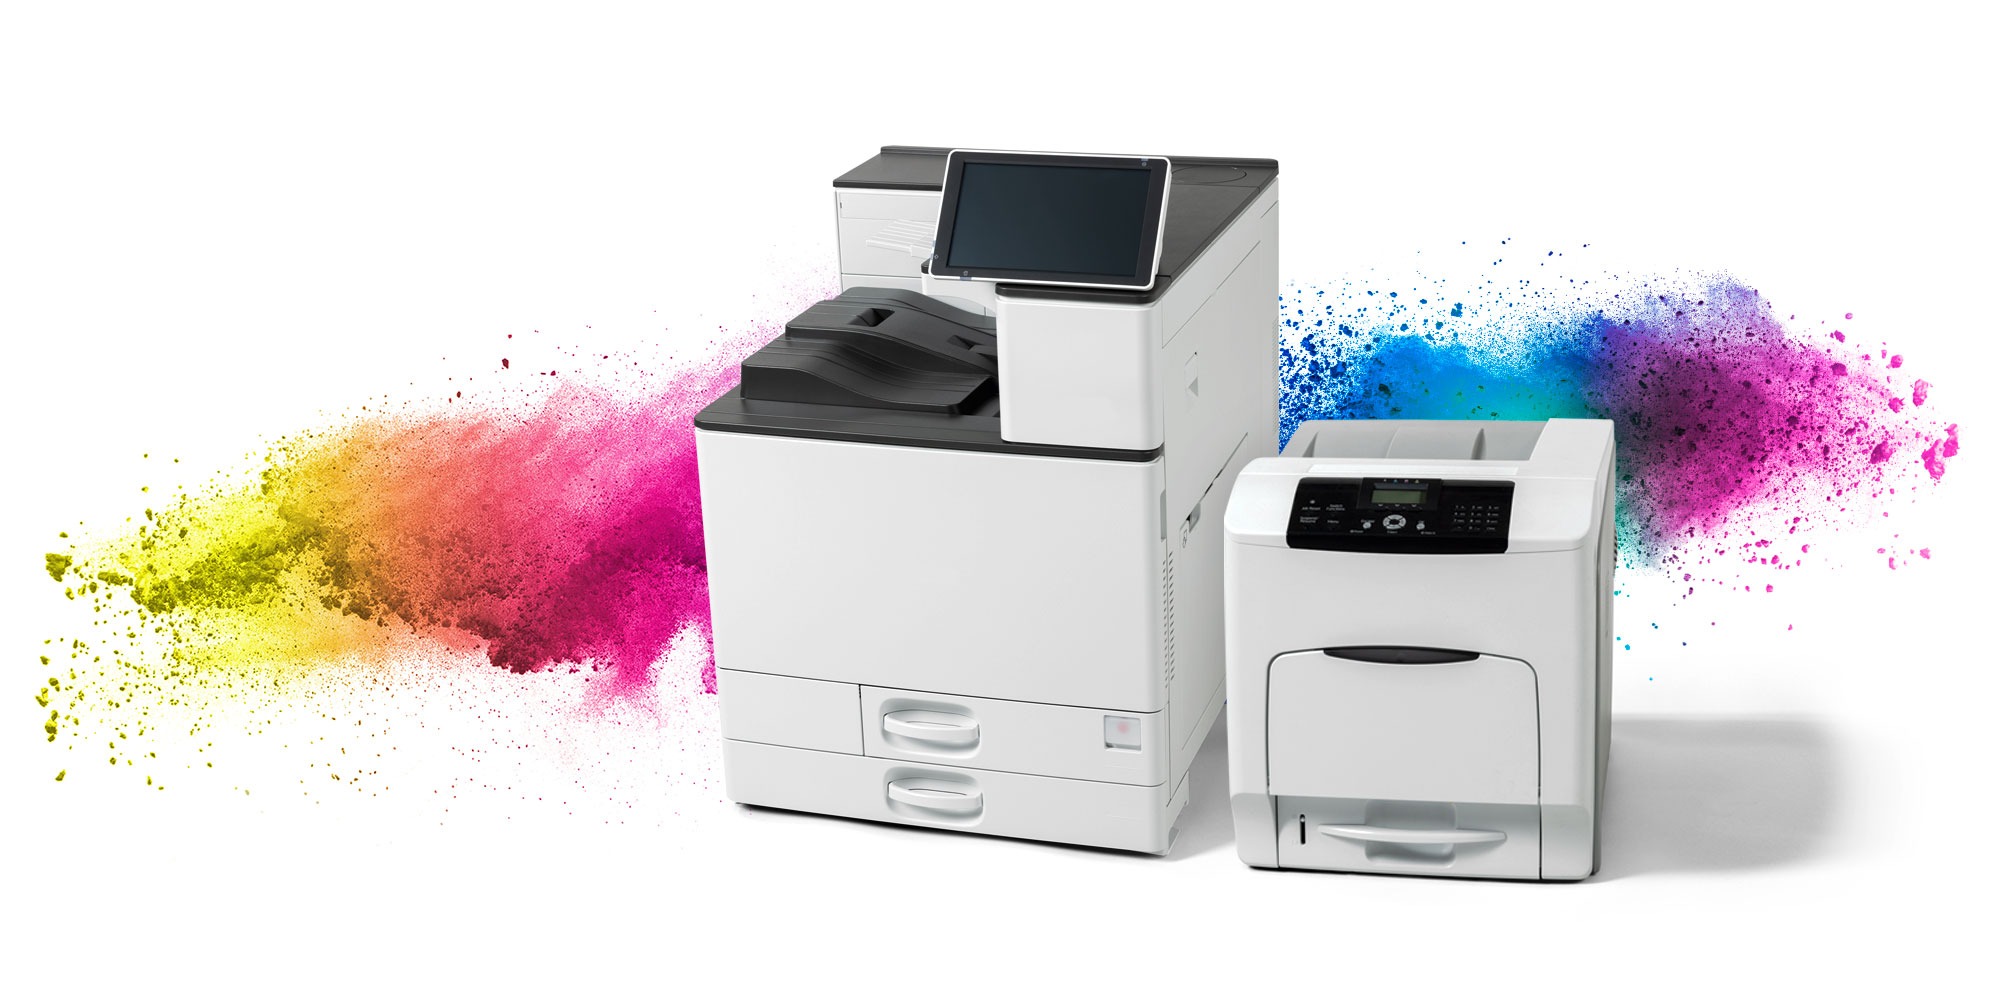 Keramischer Laserdrucker für den Druck von Abziehbildern im Format DIN A3 und DIN A4. Mit farbigem Tonerpulver im Hintergrund.